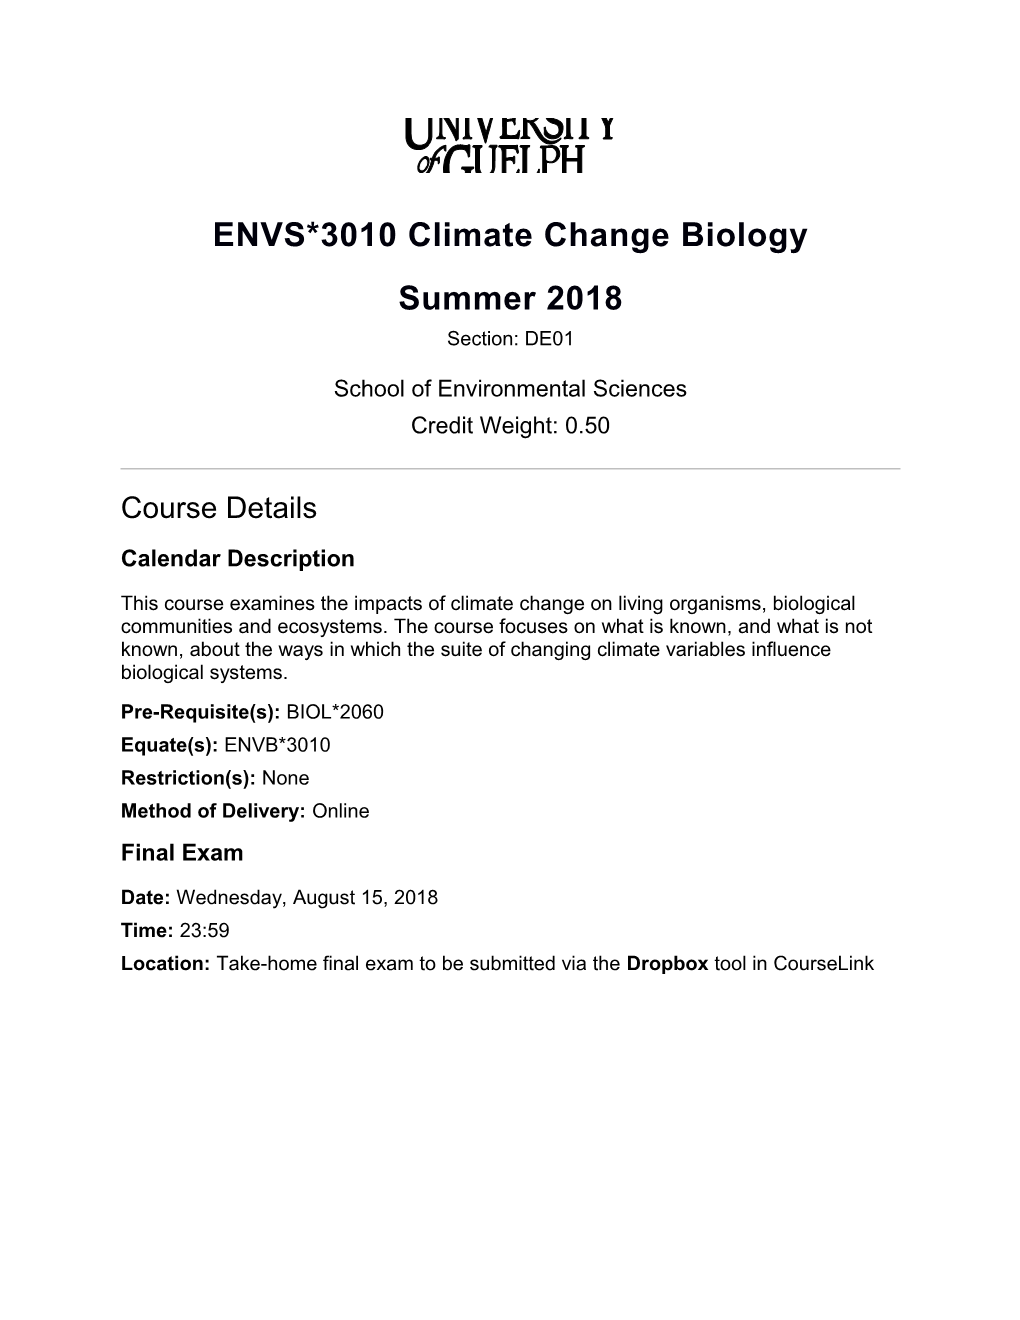 ENVS*3010DE S18 Course Outline